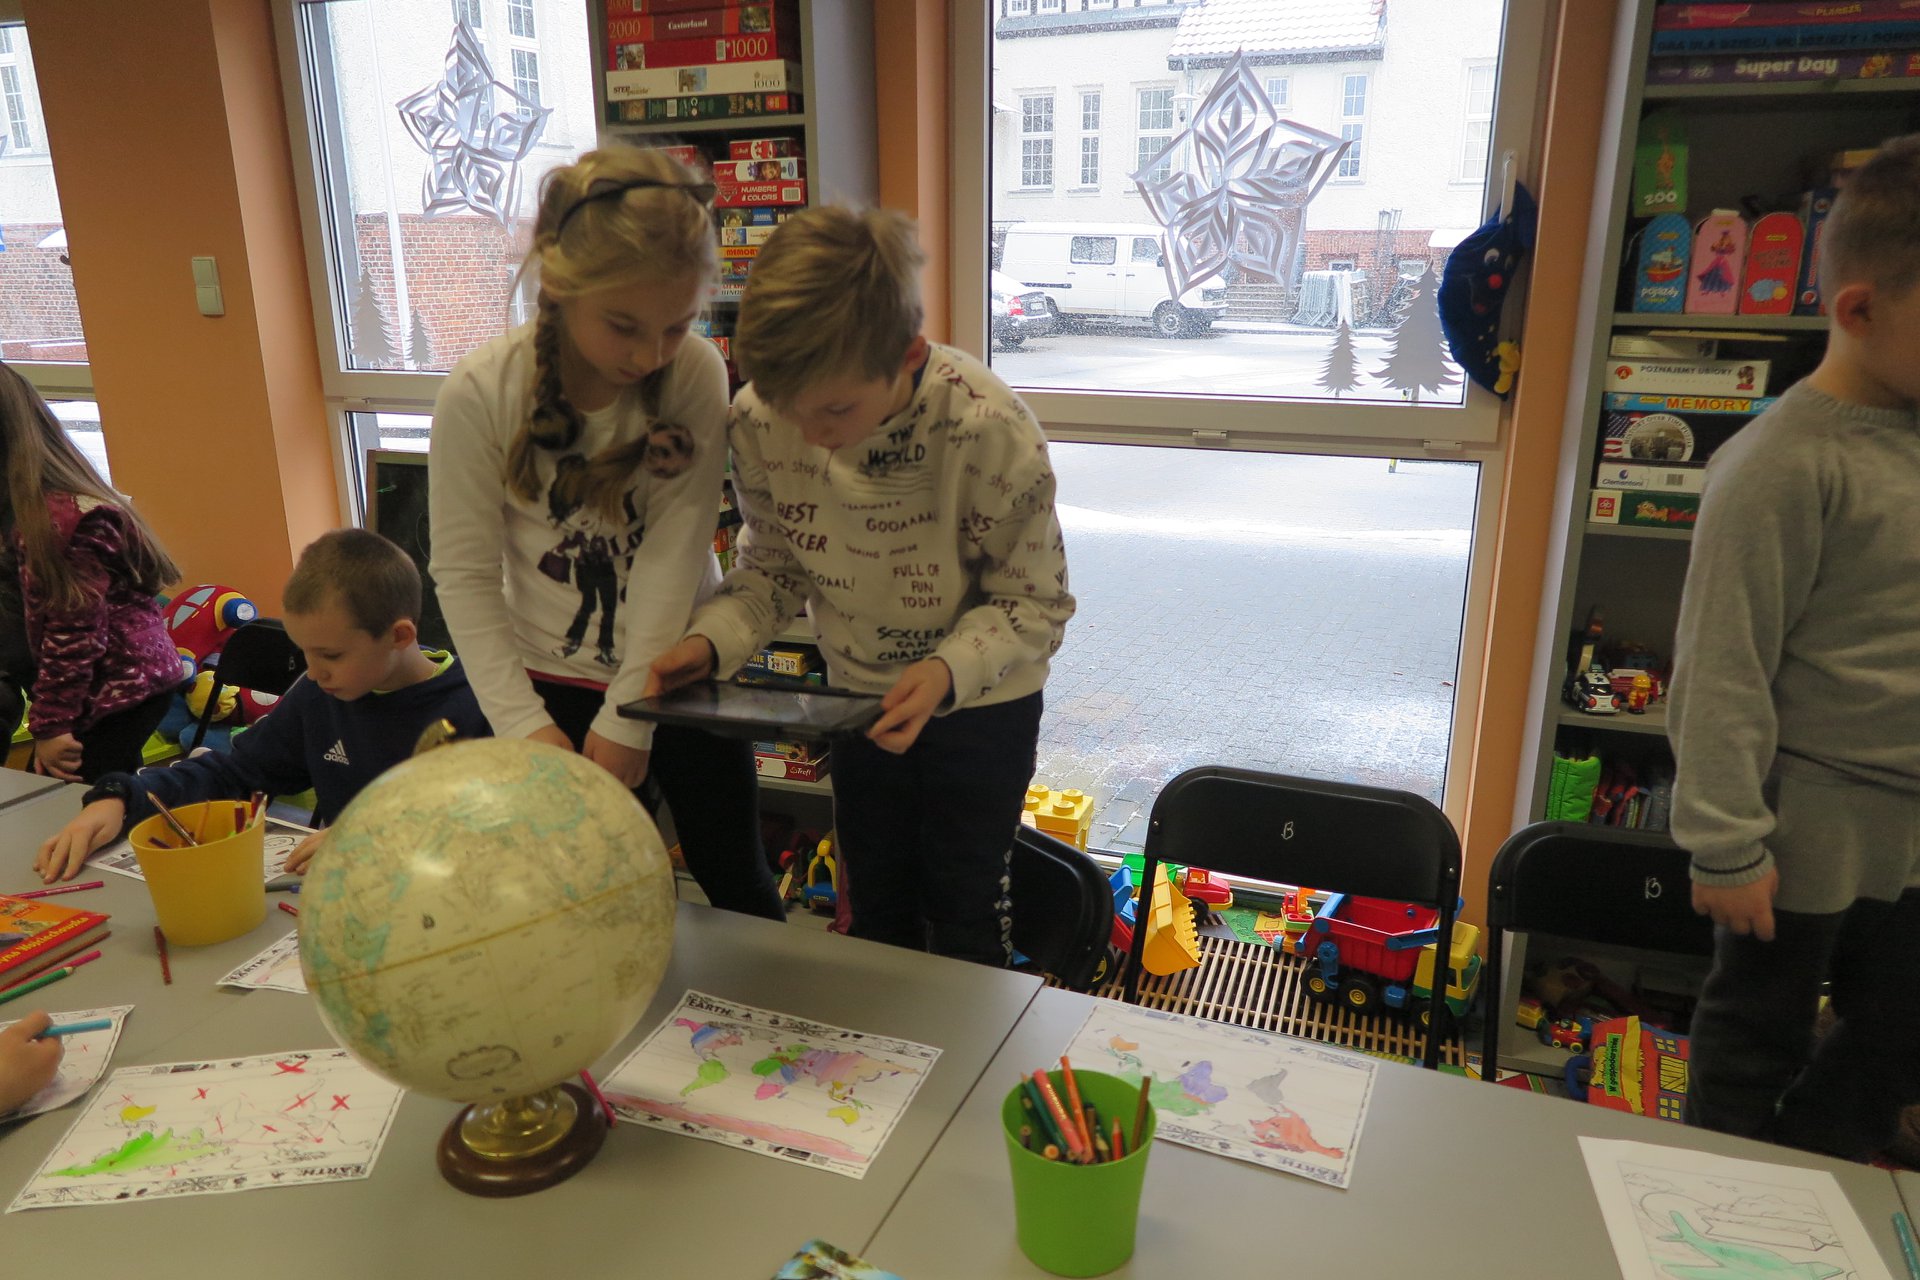 Wnętrze biblioteki (Klub Malucha) warsztaty geograficzne przy stoliku dzieci trzymają tableta i oglądają schematy geograficzne.